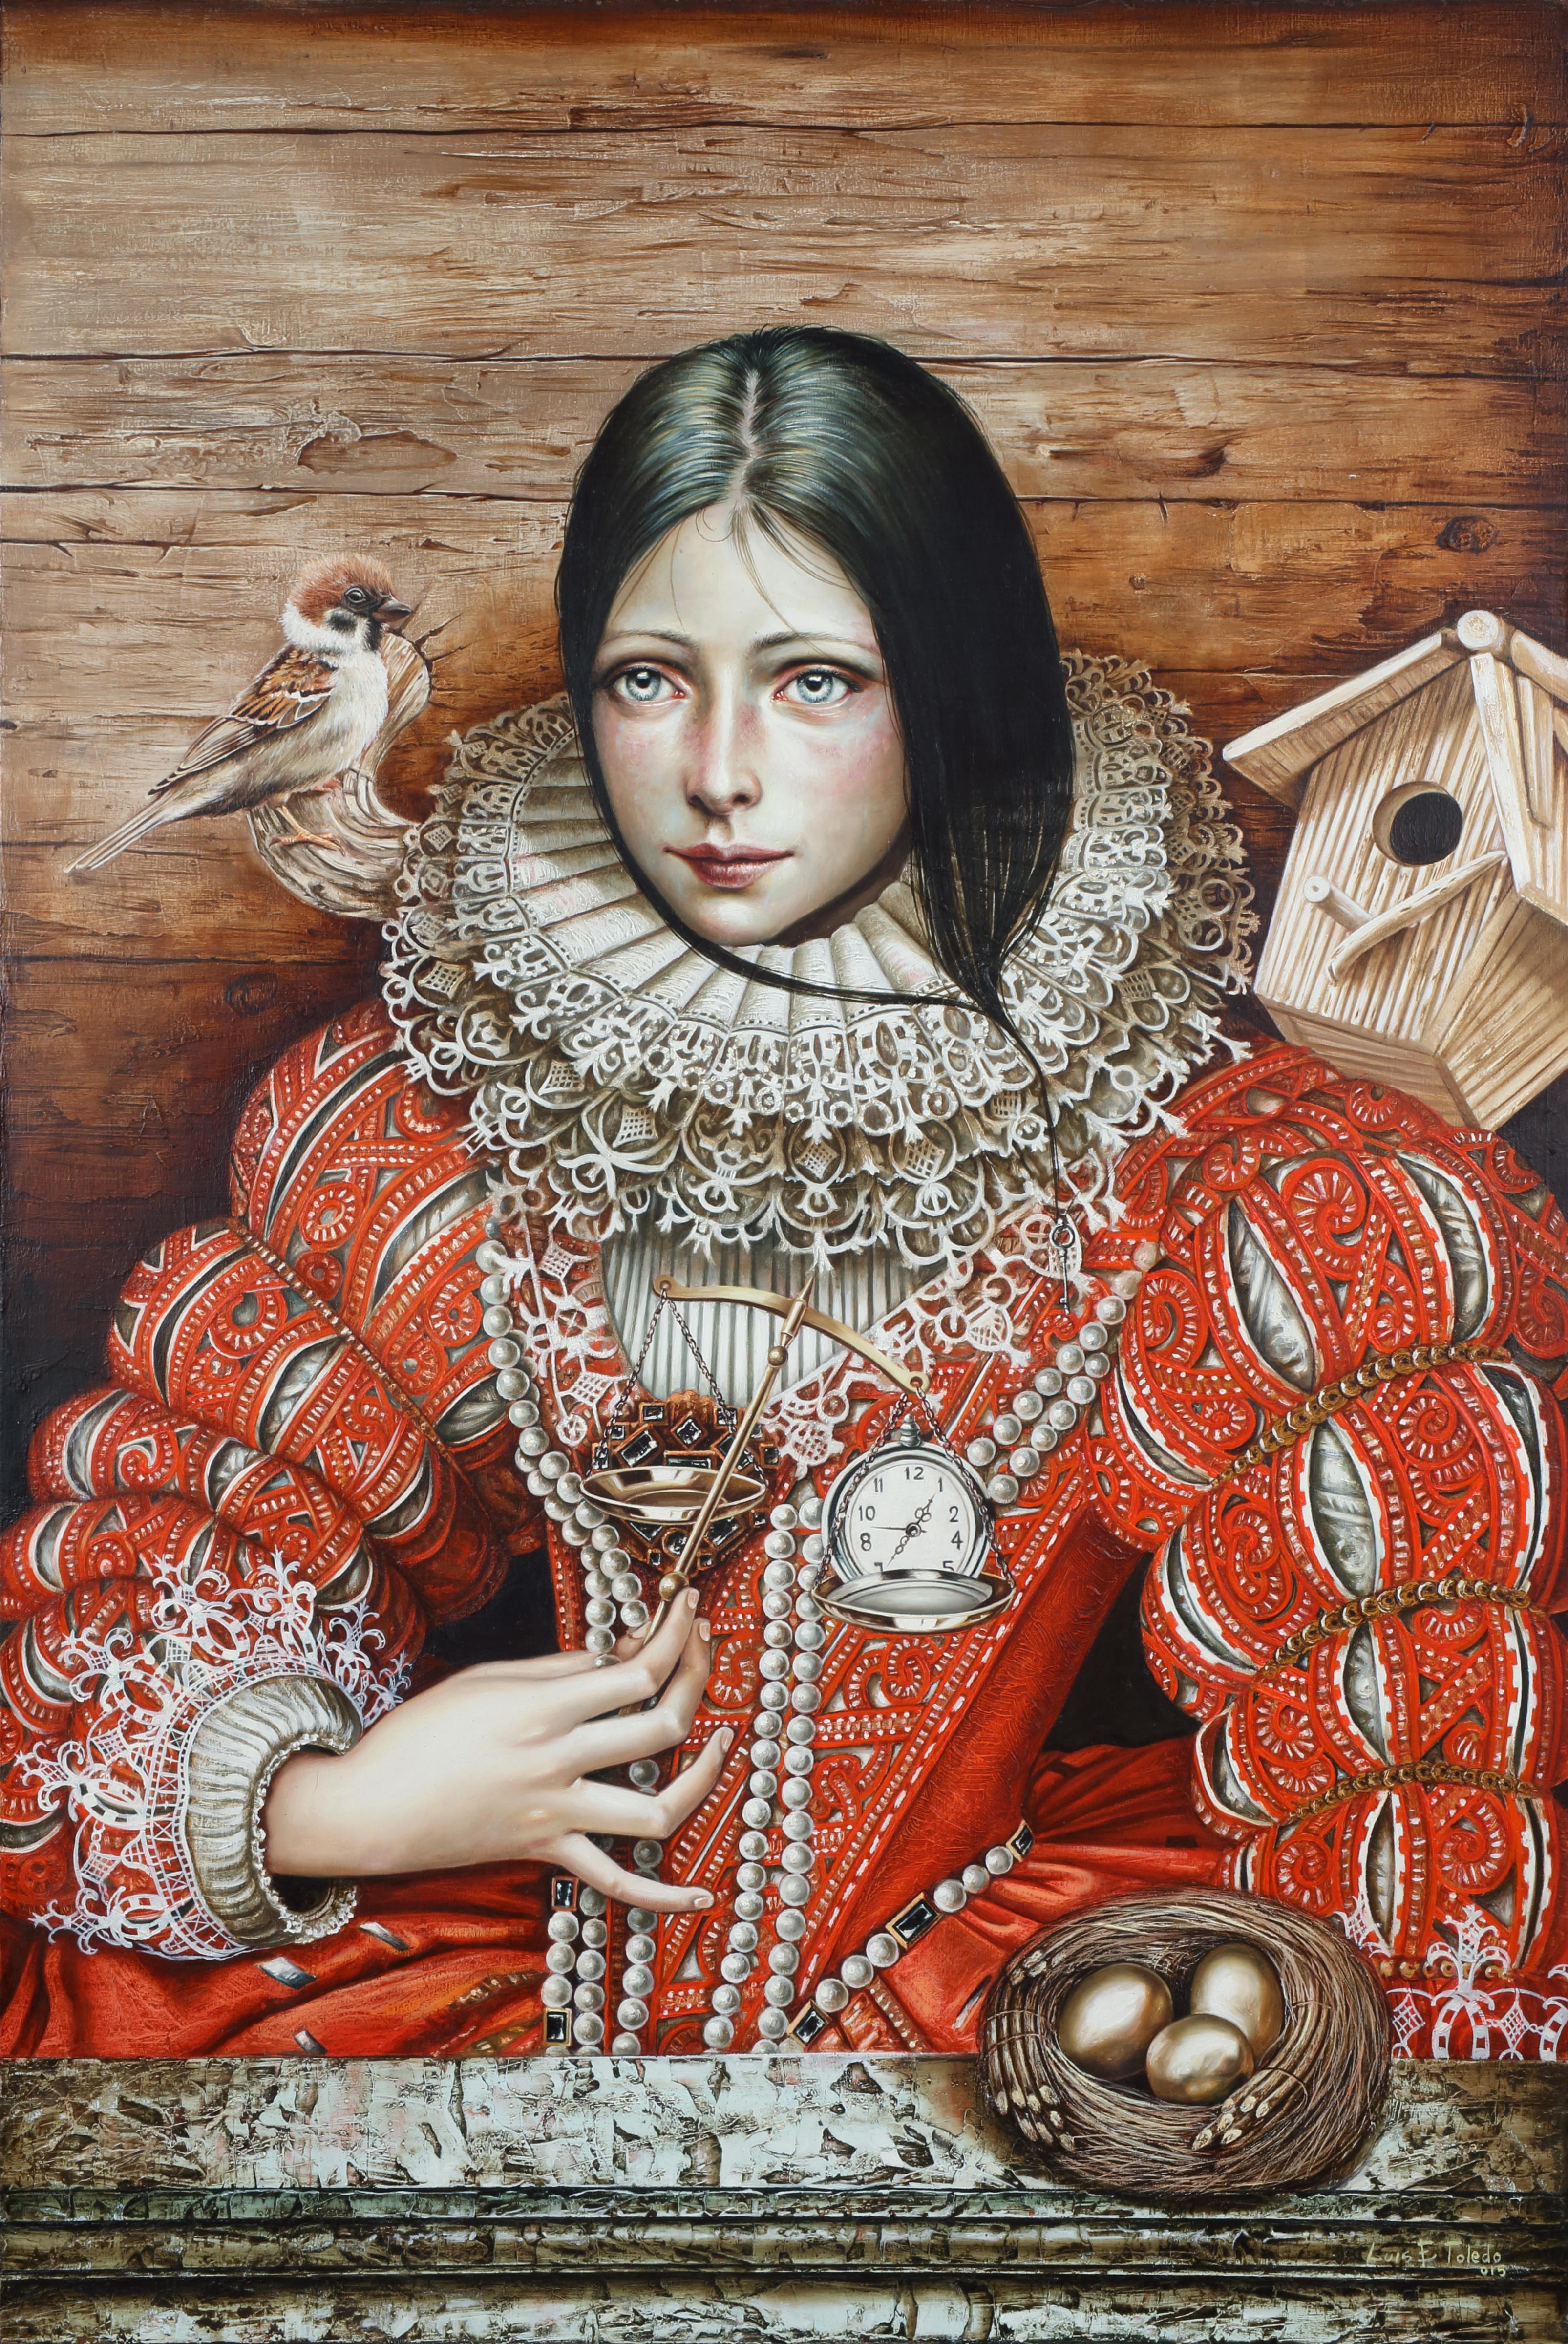 Luis Enrique Toledo del Rio Portrait Painting - Time of the golden birth